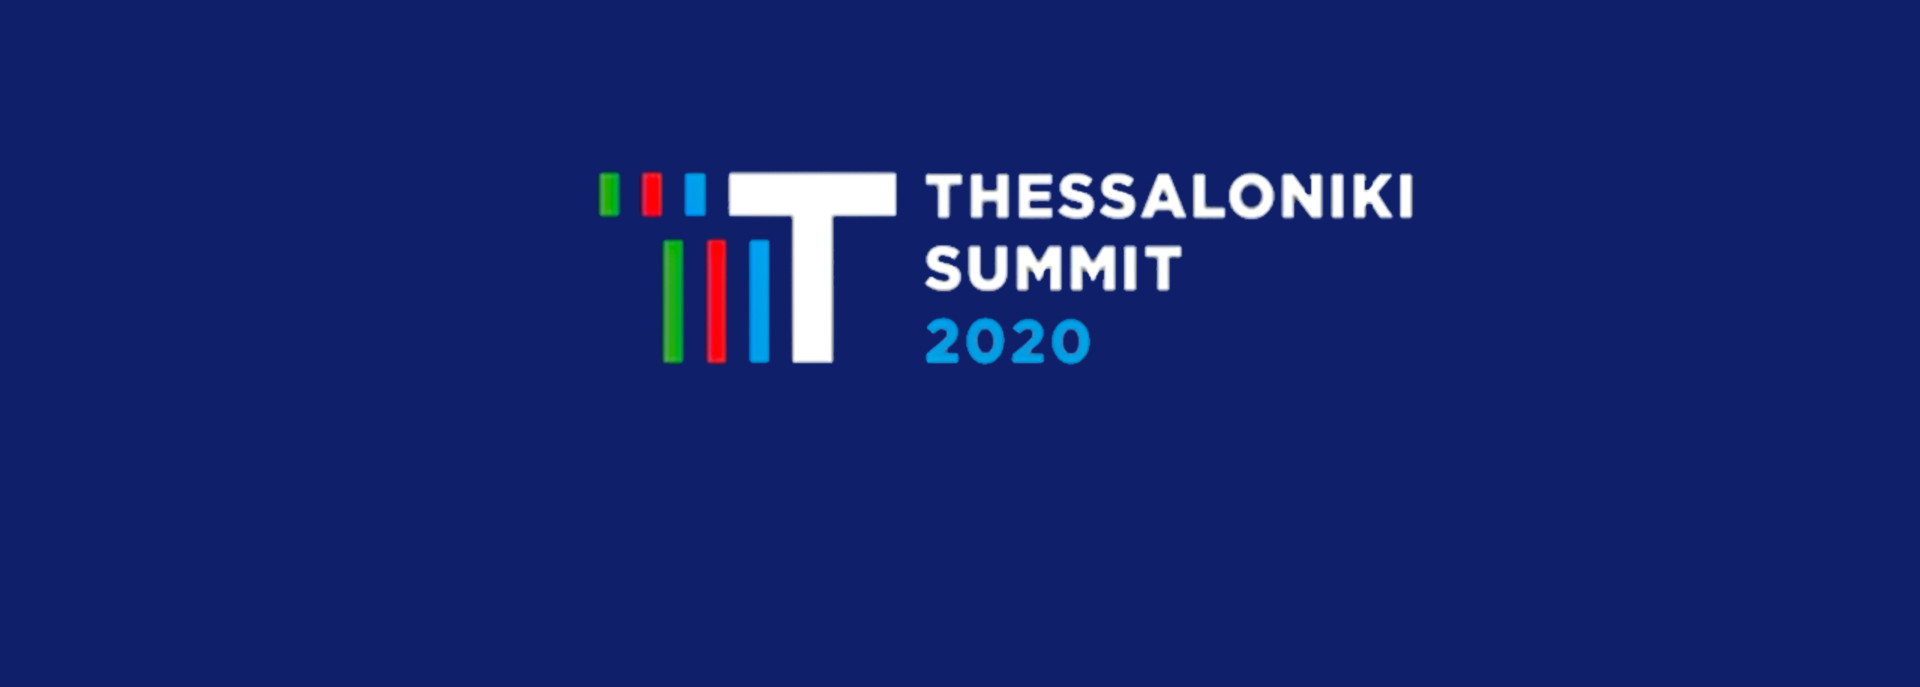 Thessaloniki Summit 2020